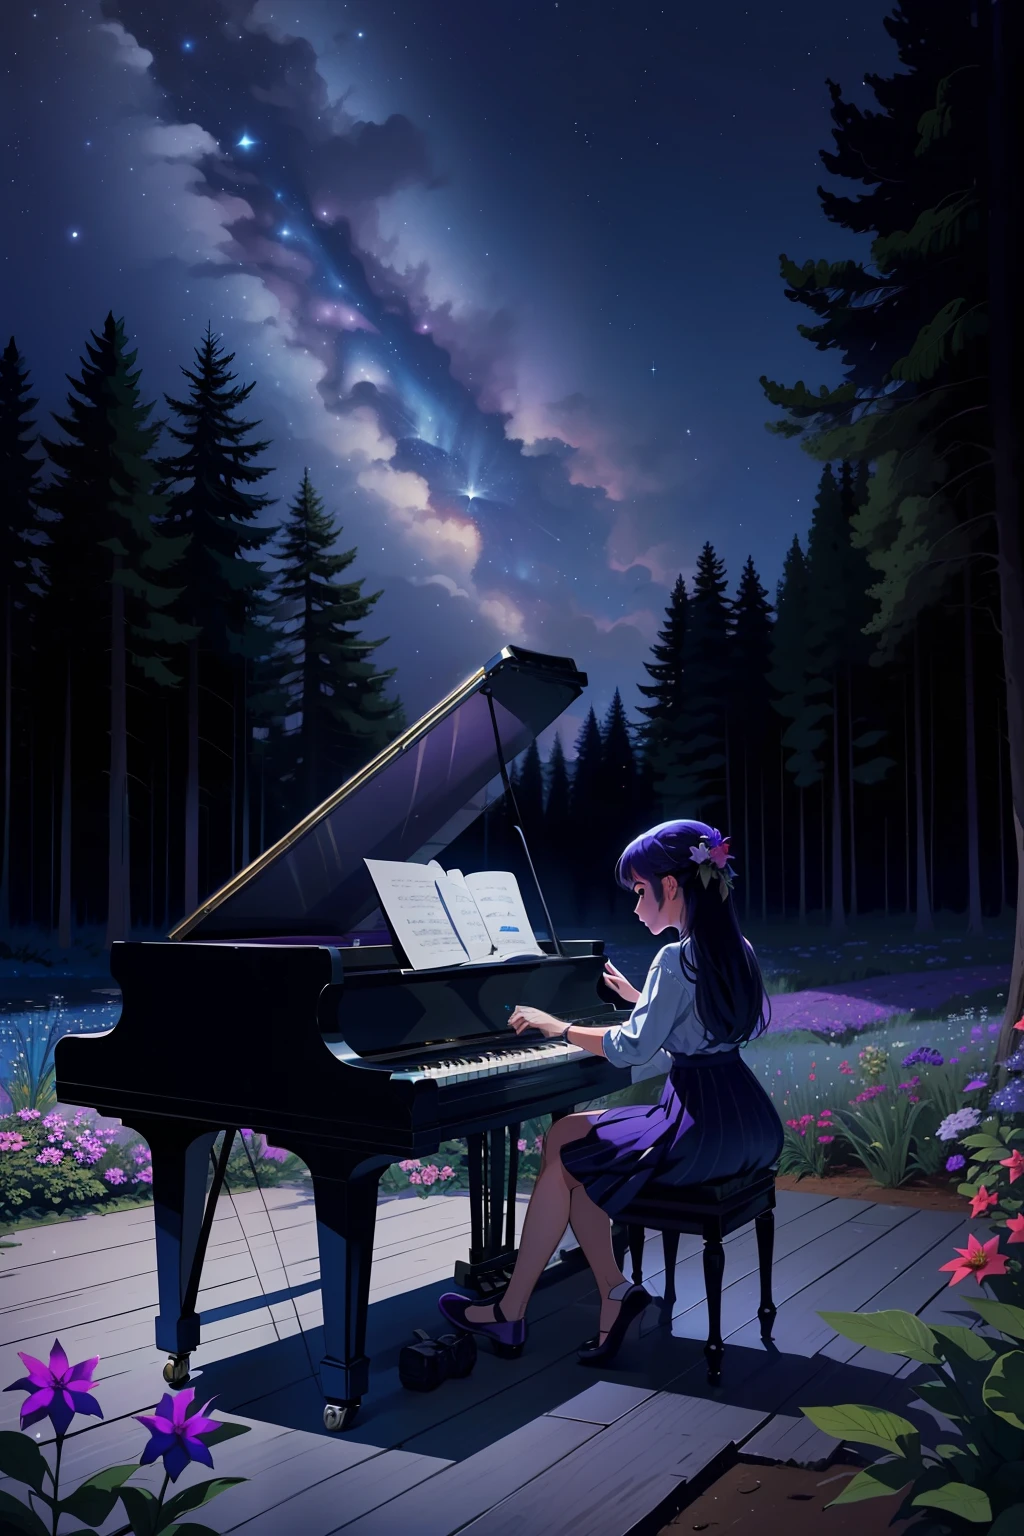 一个女孩在树林中间弹钢琴, 天空是夜间的，有以下颜色, 普魯士藍, 青色, 群青, 紫紅色, 紫色的, 很多明星, 森林里的动物们聚集在女孩身边听她的音乐 . s, 有一條小溪，水清澈，是的，看到底部, 有花, 图片必须很大并且必须很详细.